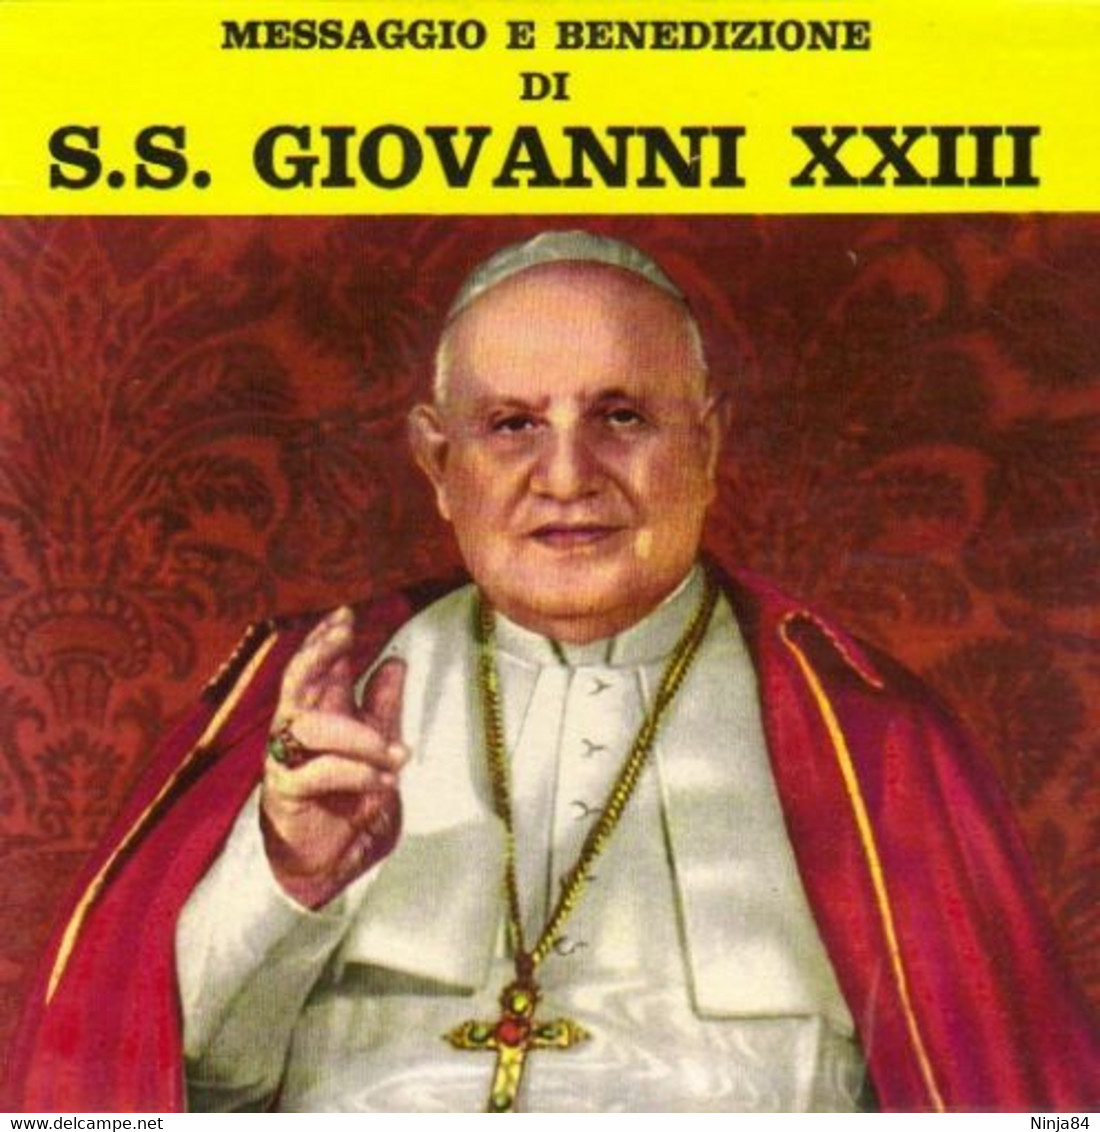 SP 45 RPM (7")  S.S Giovanni XXIII  "  Messaggio E Benedizione  "  Italie - Religion & Gospel